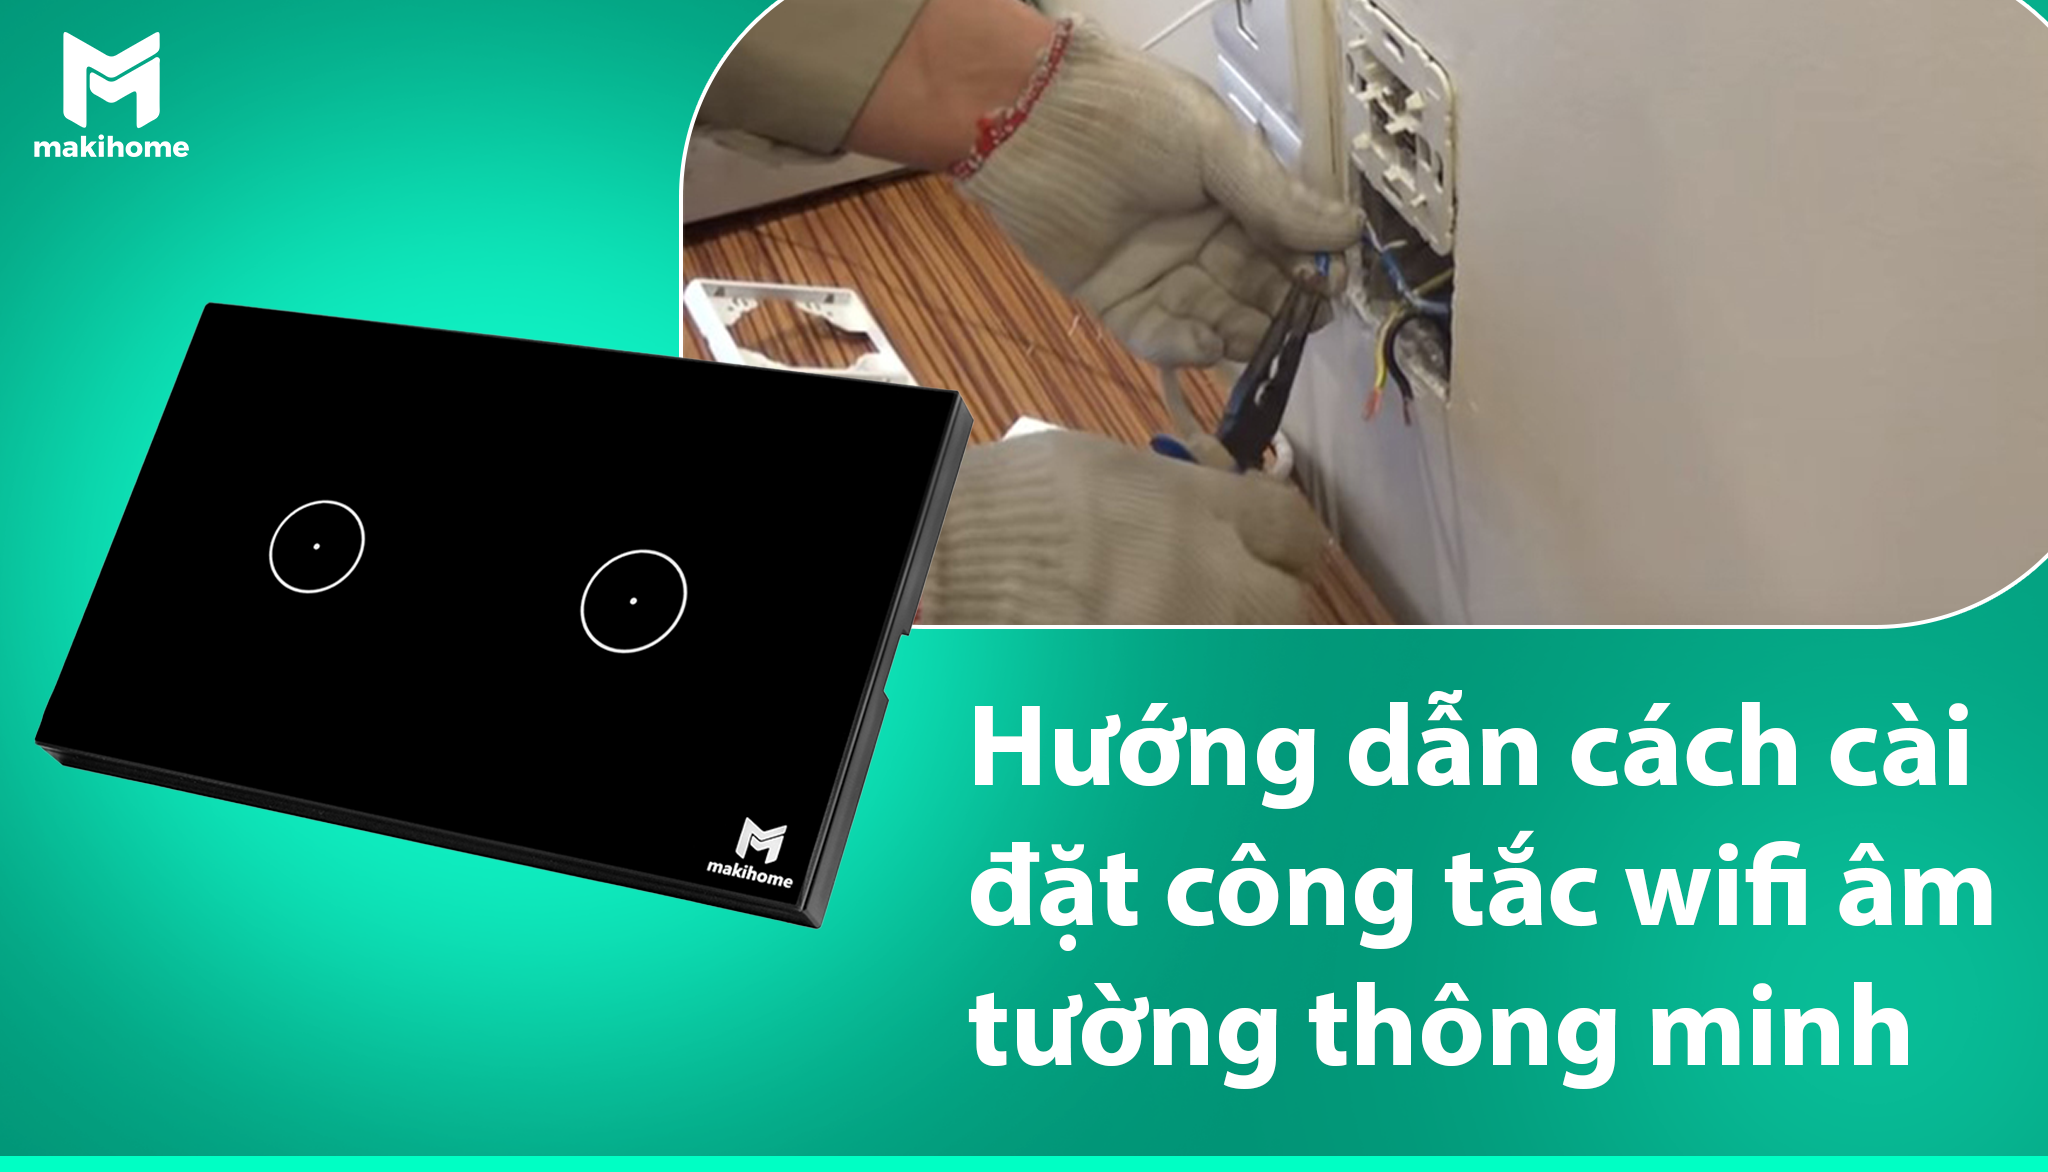 huong-dan-cach-cai-dat-cong-tac-wifi-am-tuong-thong-minh